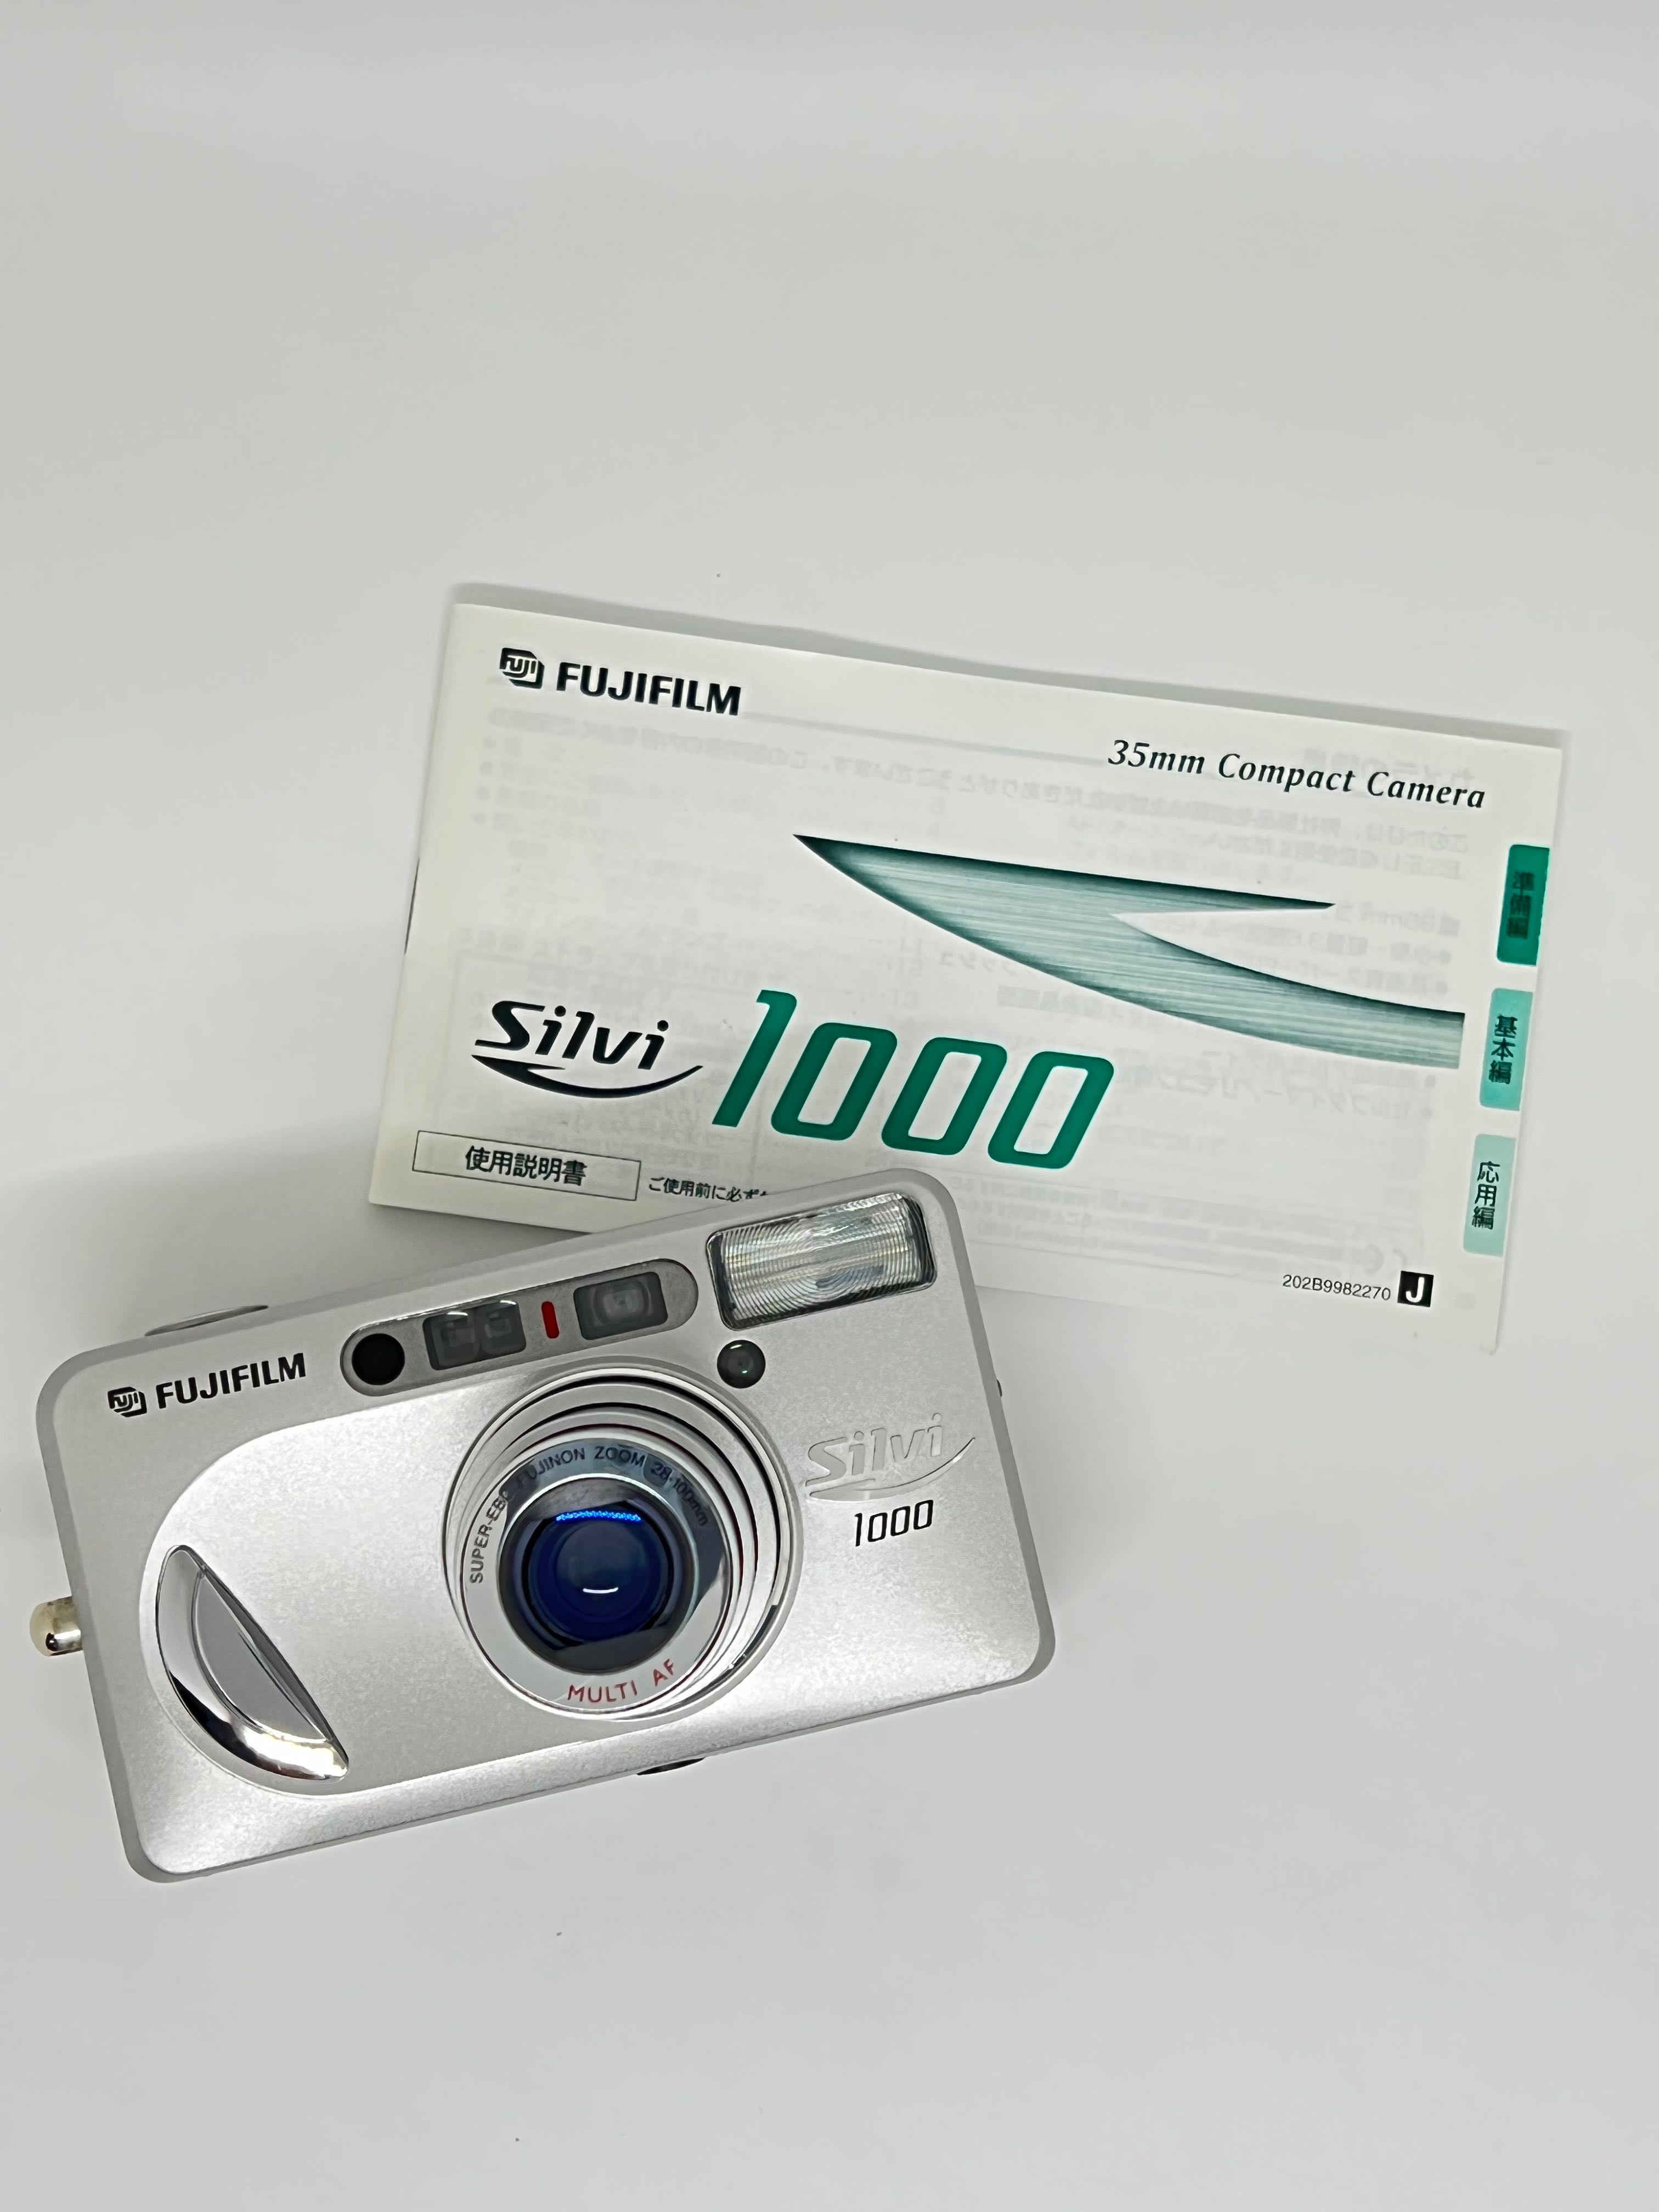 Fujifilm Silvi 1000 菲林相機, 攝影器材, 相機- Carousell